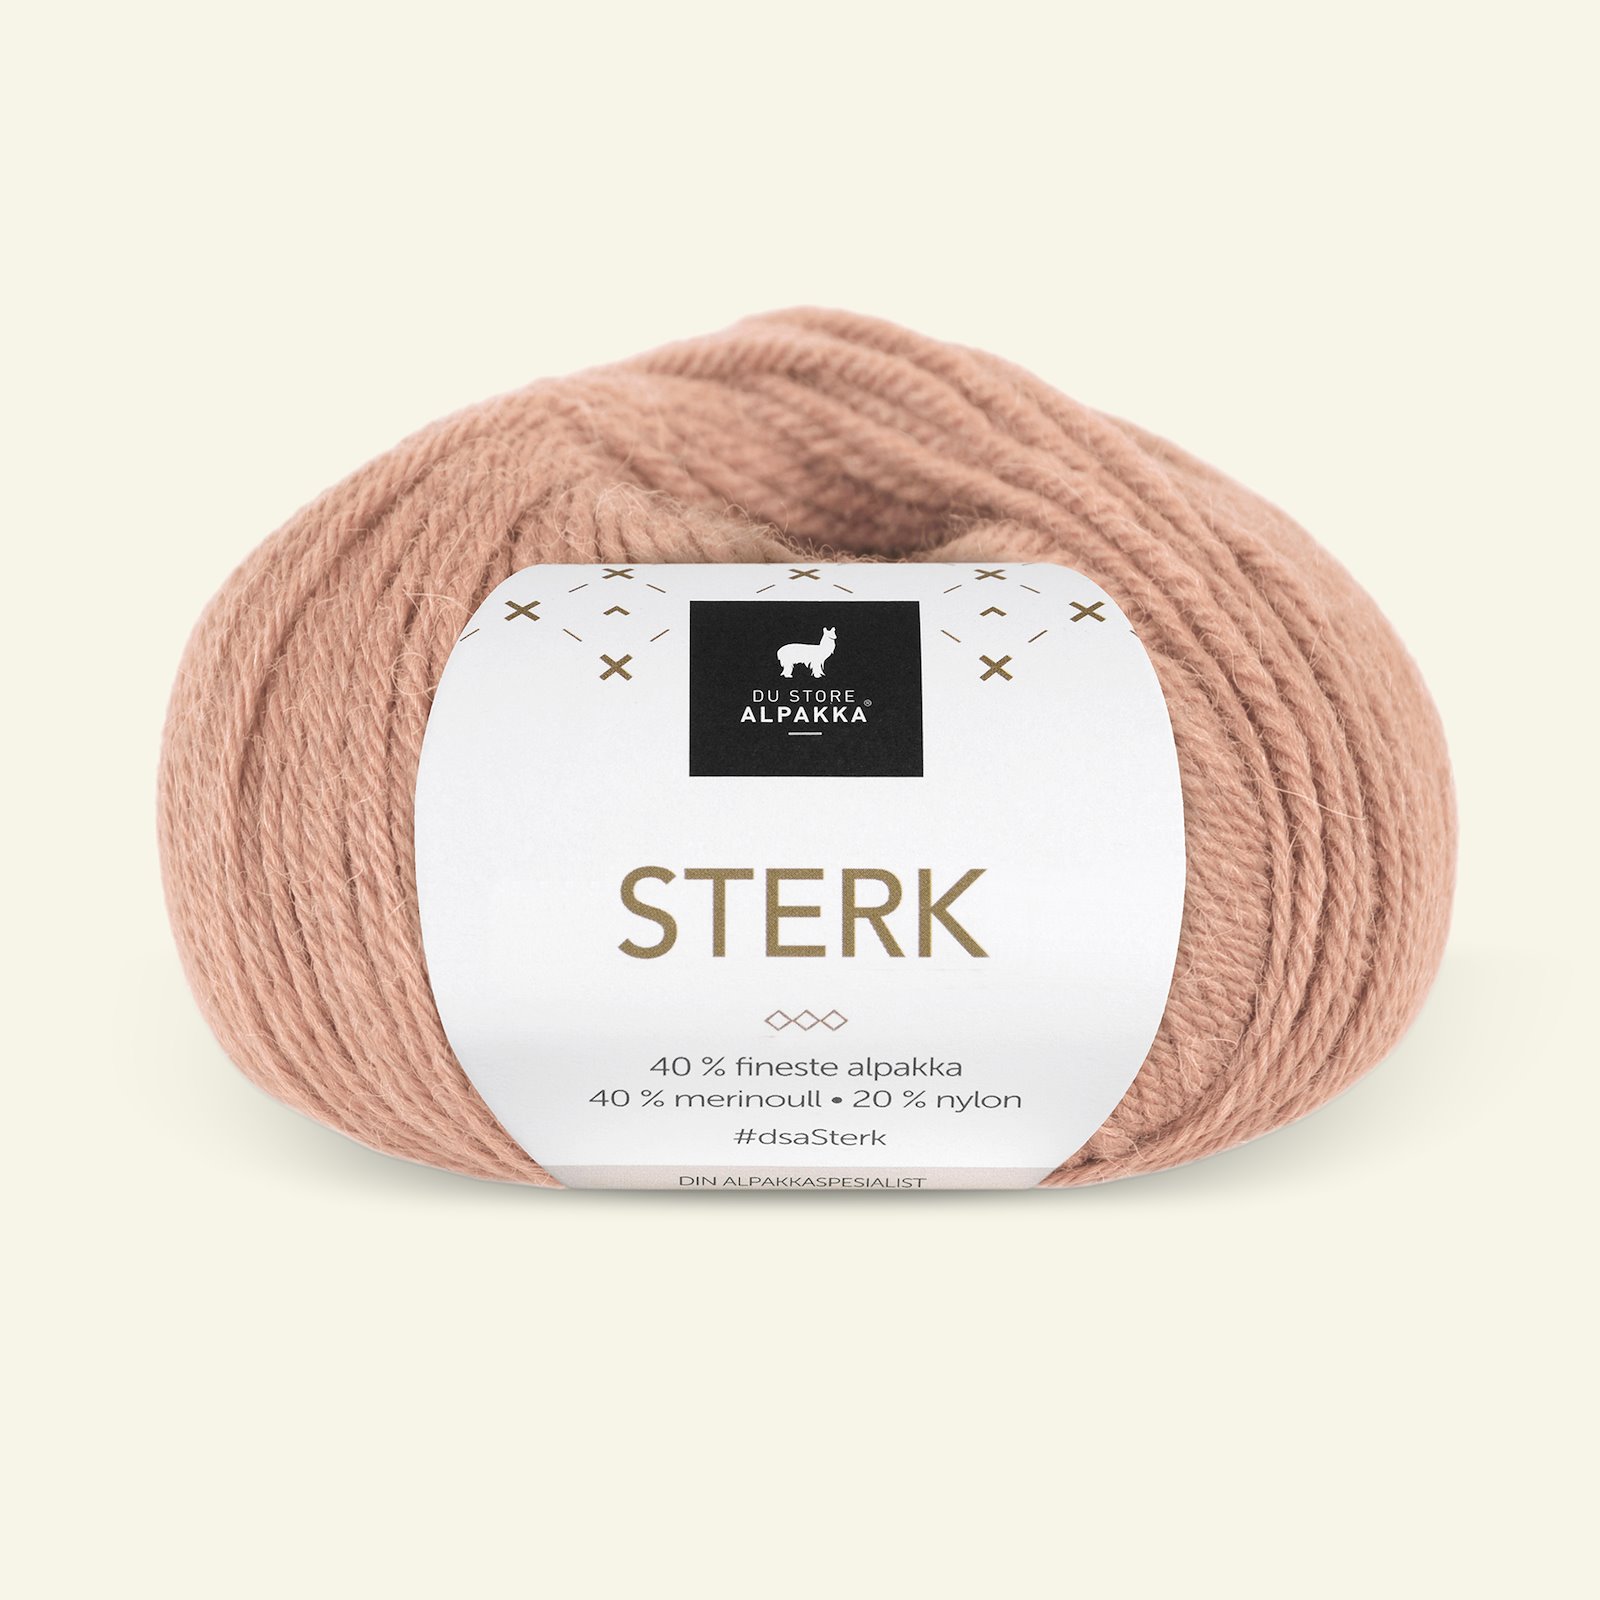 Du Store Alpakka, alpaca merino mixed yarn "Sterk", light caramel (911) 90000703_pack